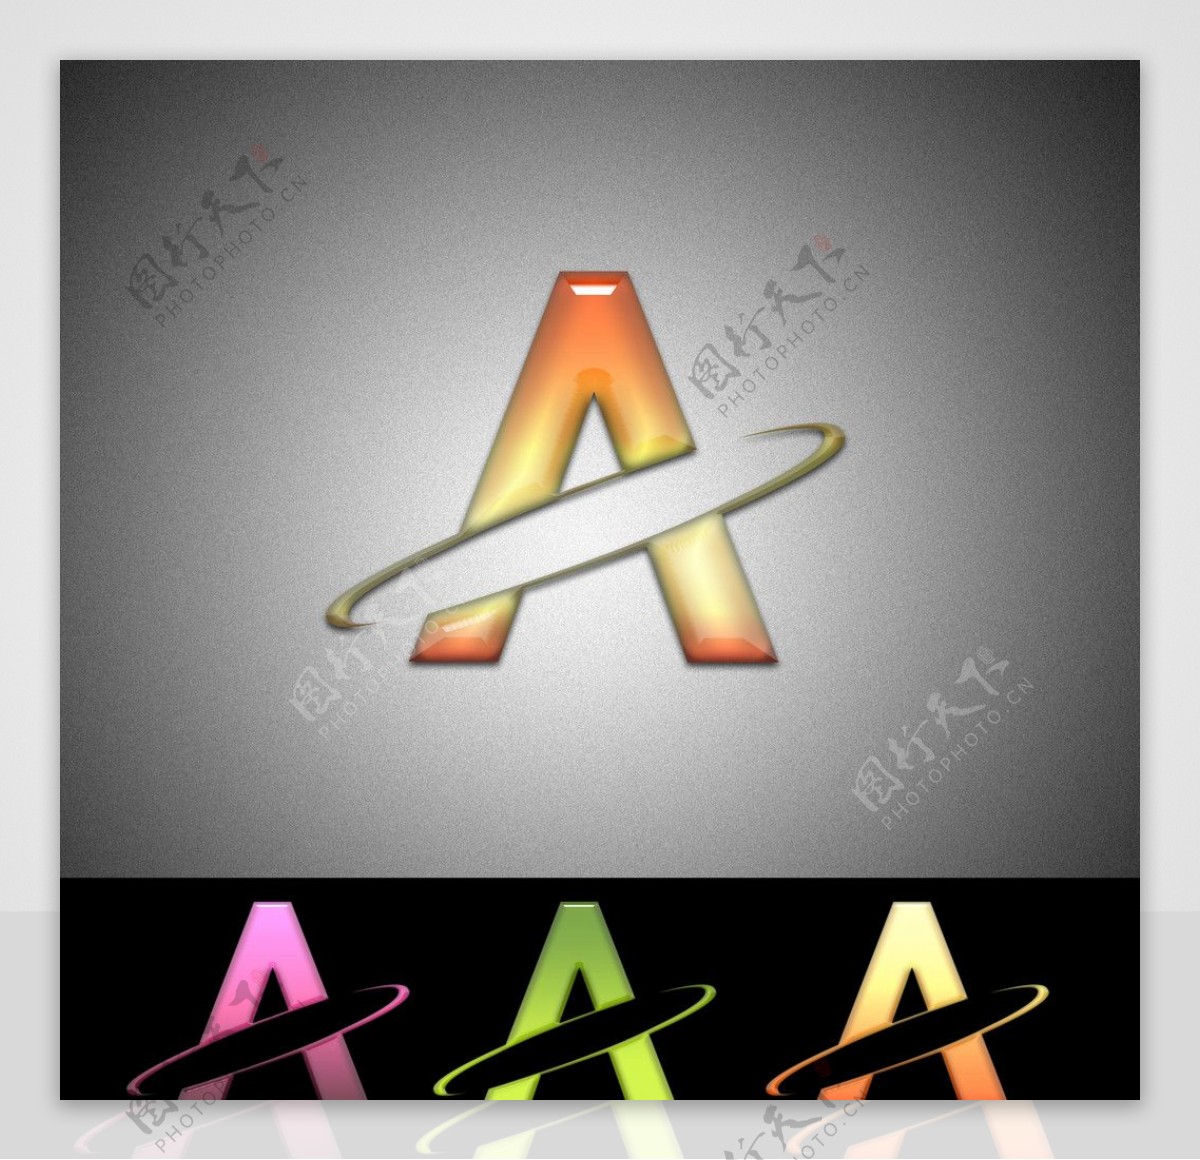 A字形Logo设计图片